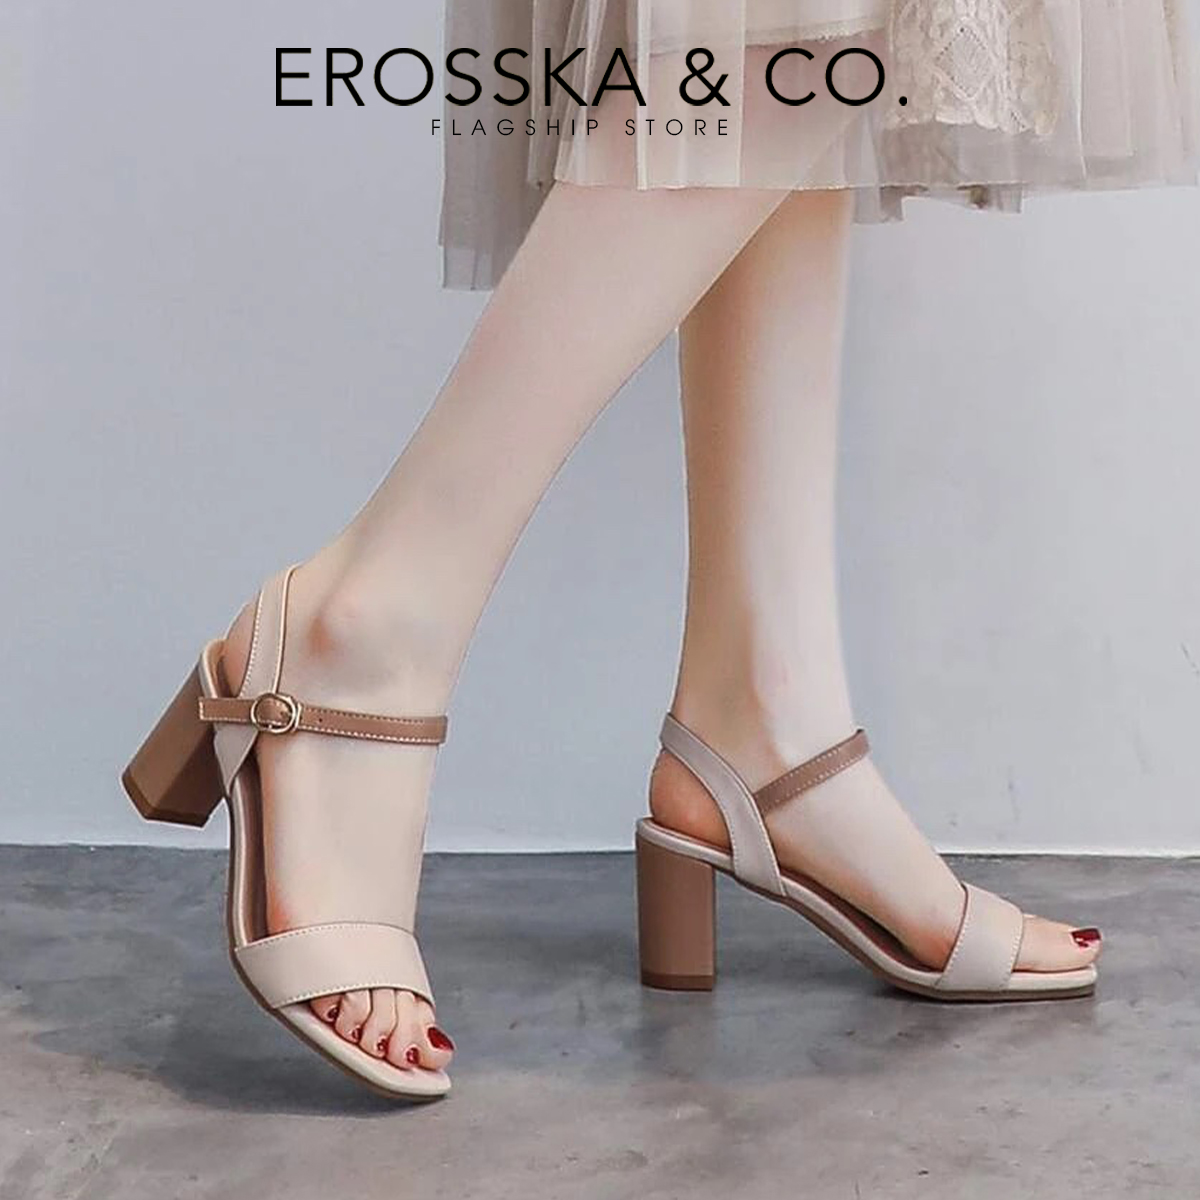 [Form nhỏ tăng 1 size] Erosska - Giày sandal nữ mũi hở phong cách thanh lịch cao 7cm - EB059